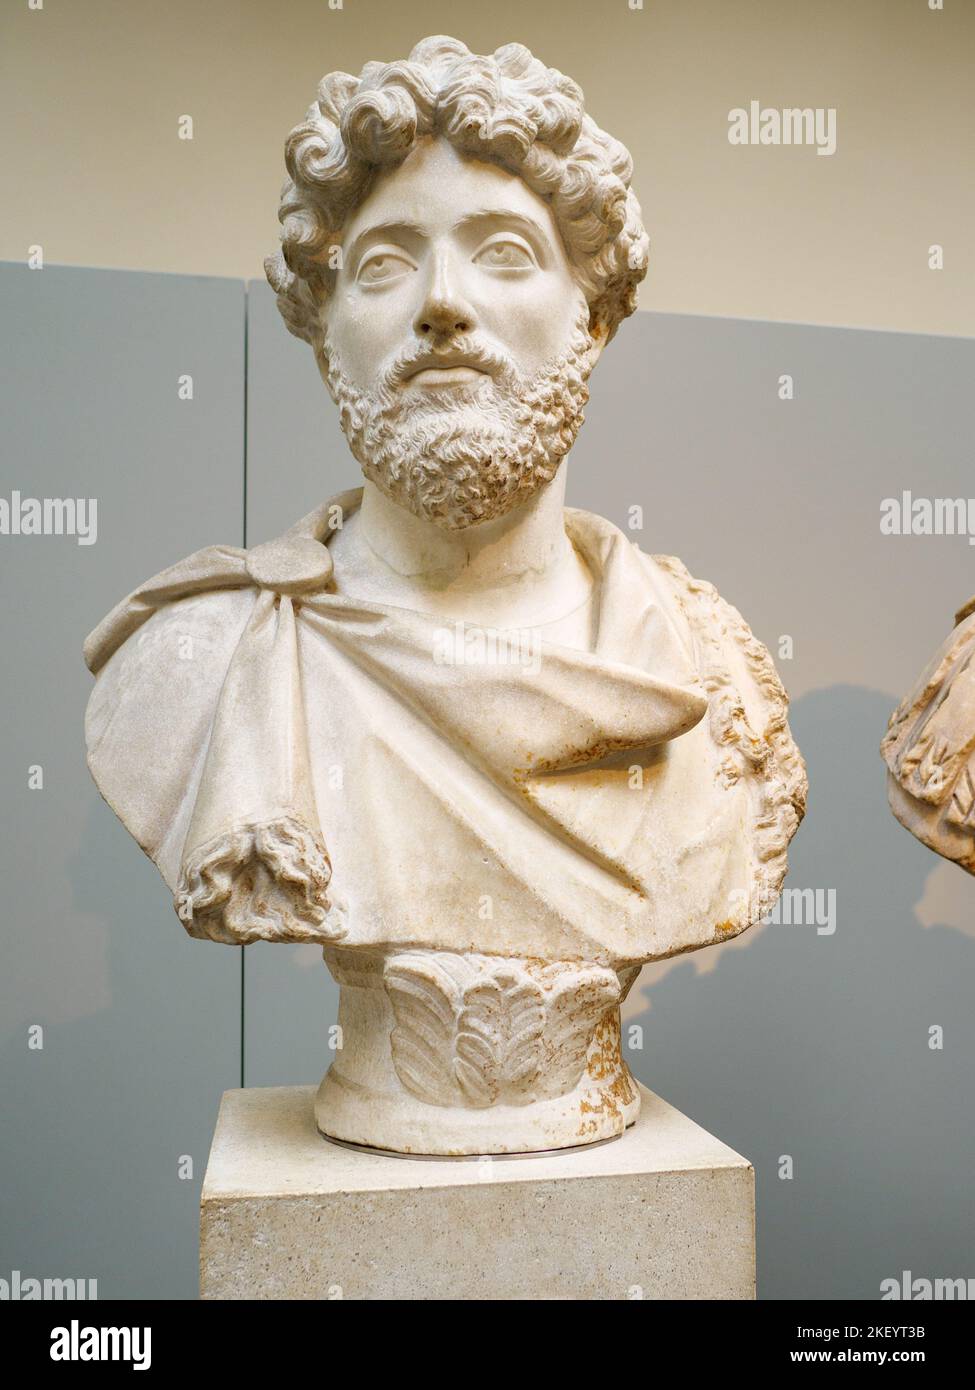 Busto de mármol del emperador romano Marcus Aurelio en el Museo Británico, Londres, Reino Unido Foto de stock